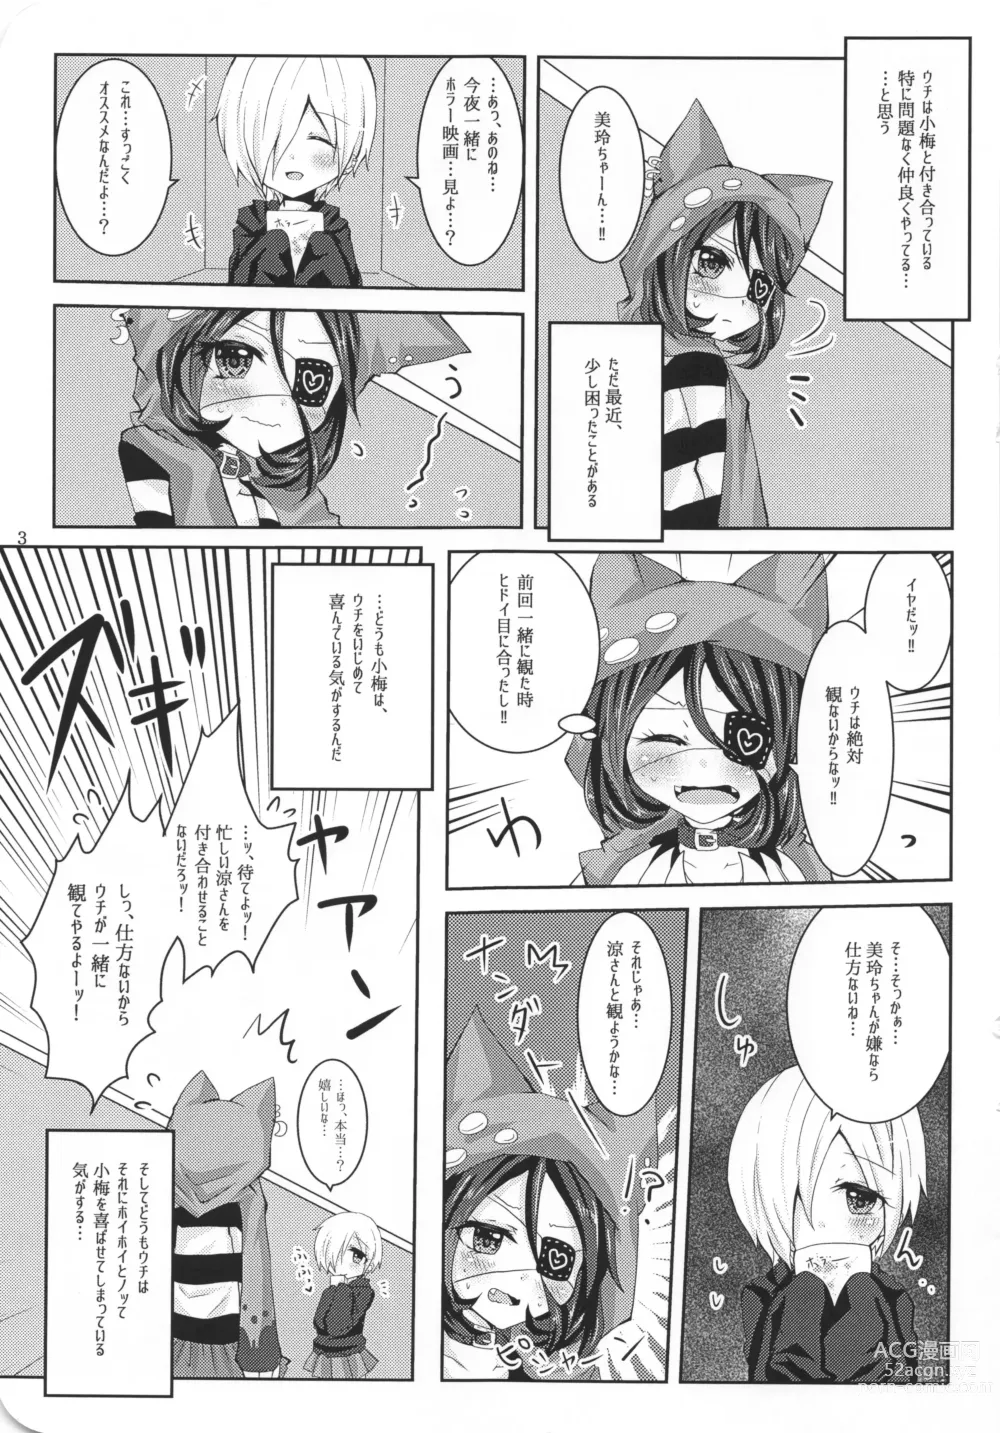 Page 9 of doujinshi Ame Muchi.